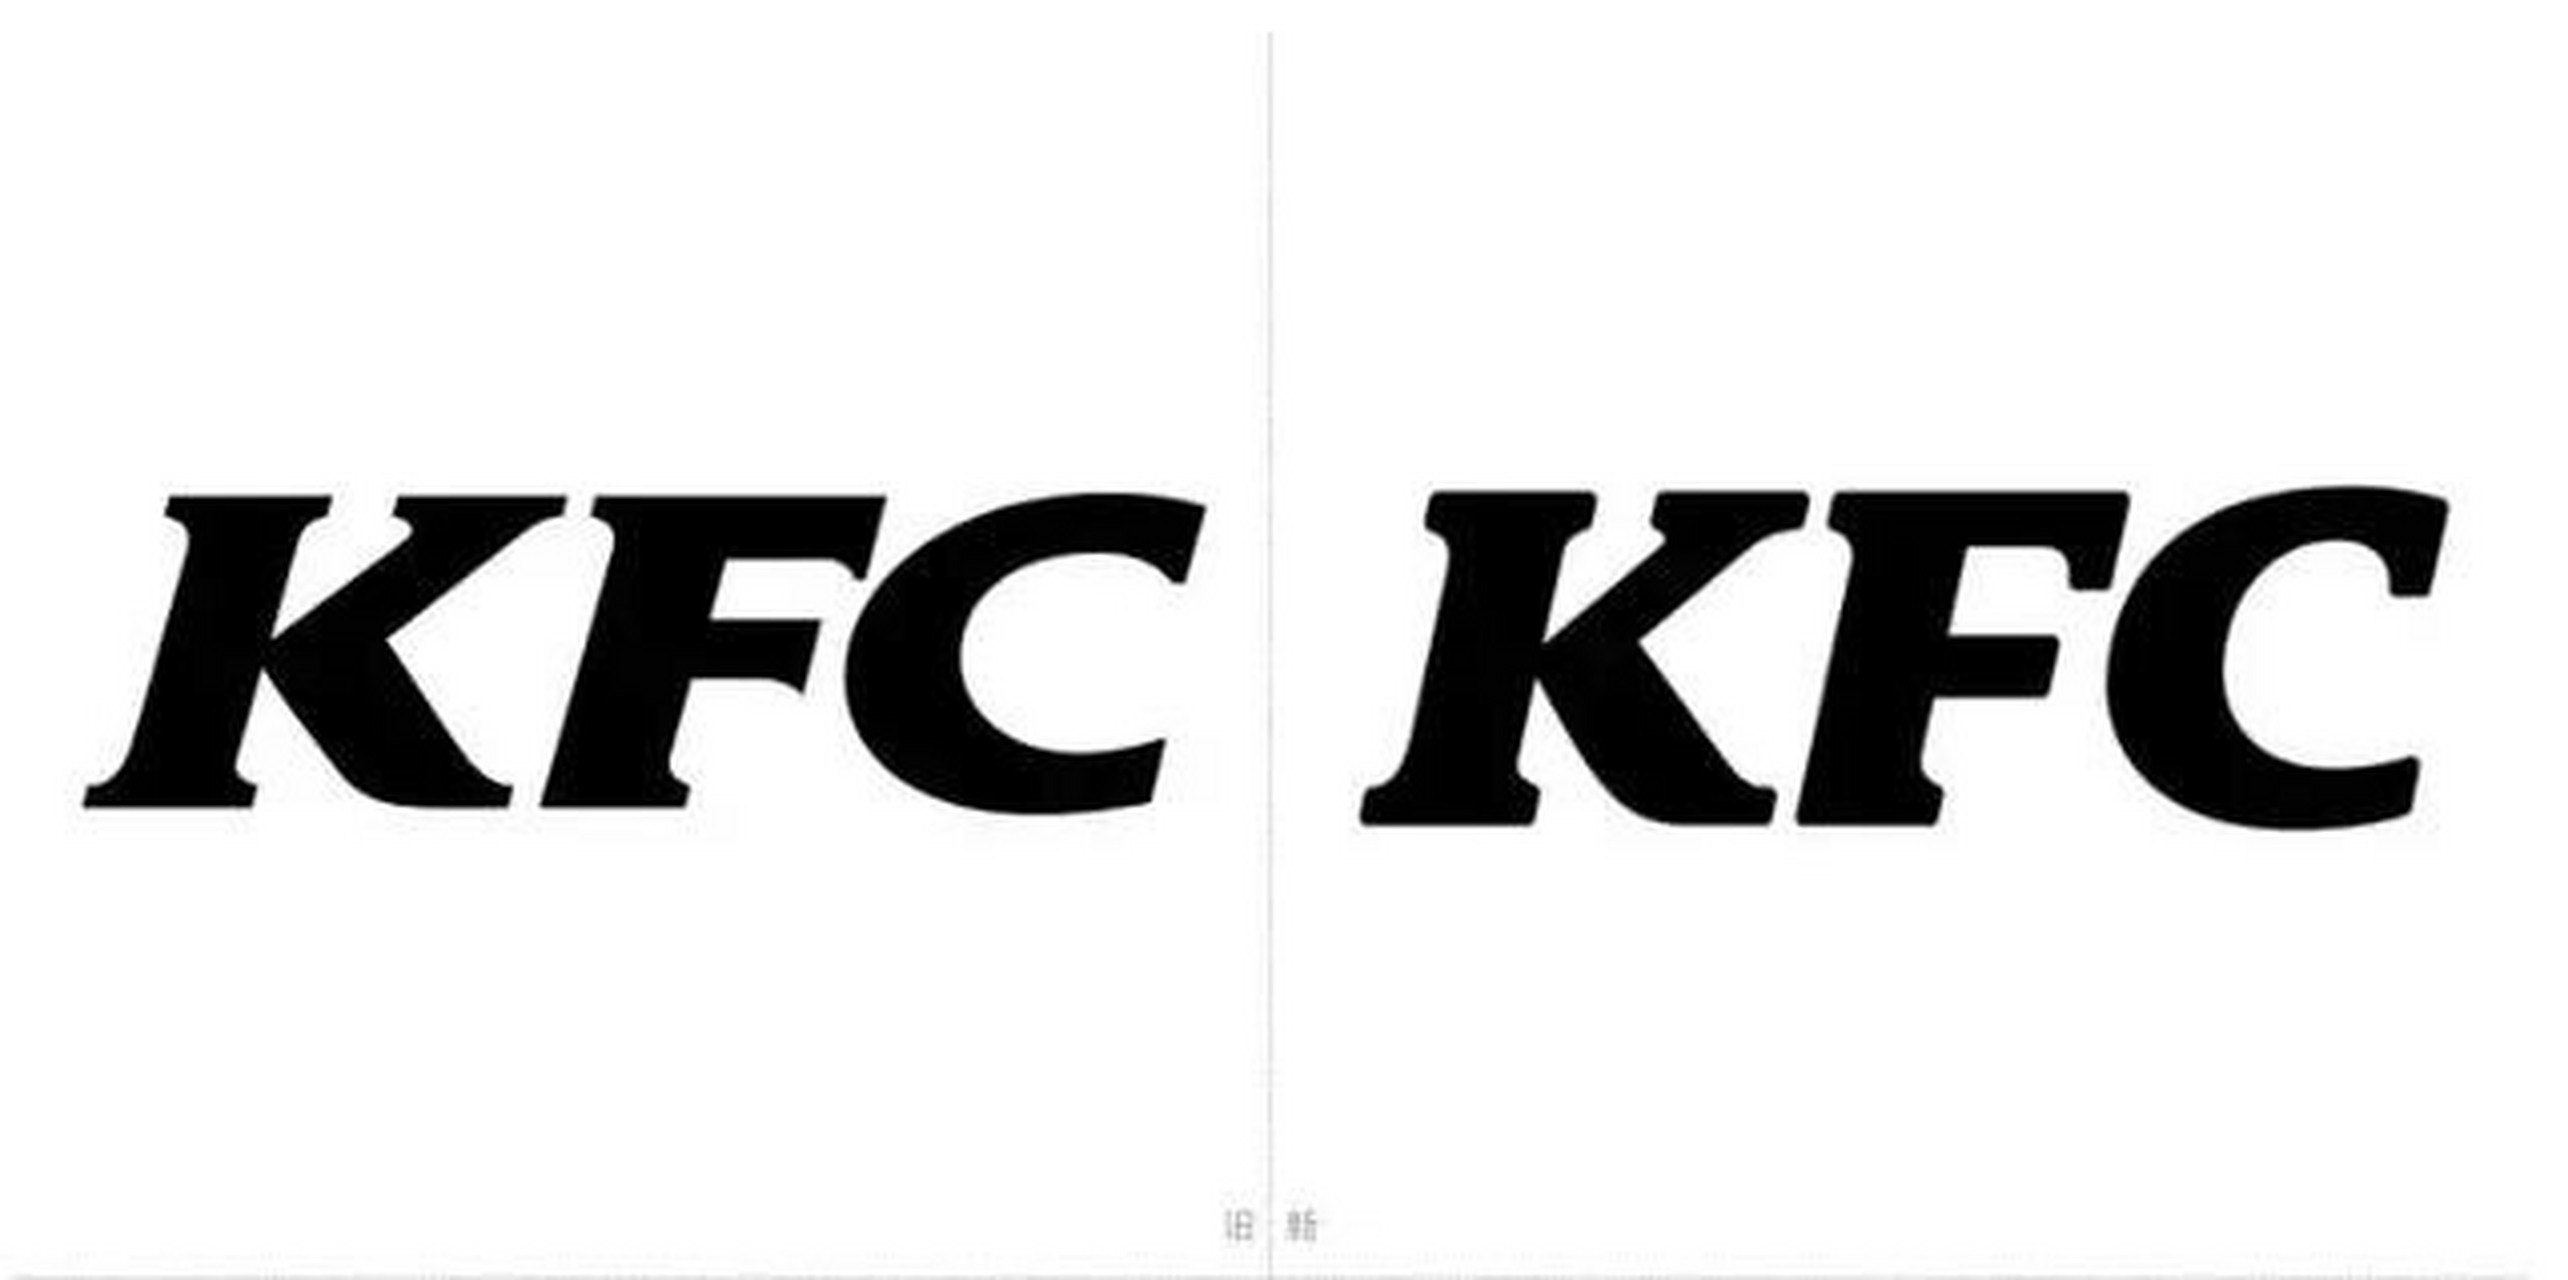 腾讯,kfc,麦当劳,都换logo了,你能看出区别吗?